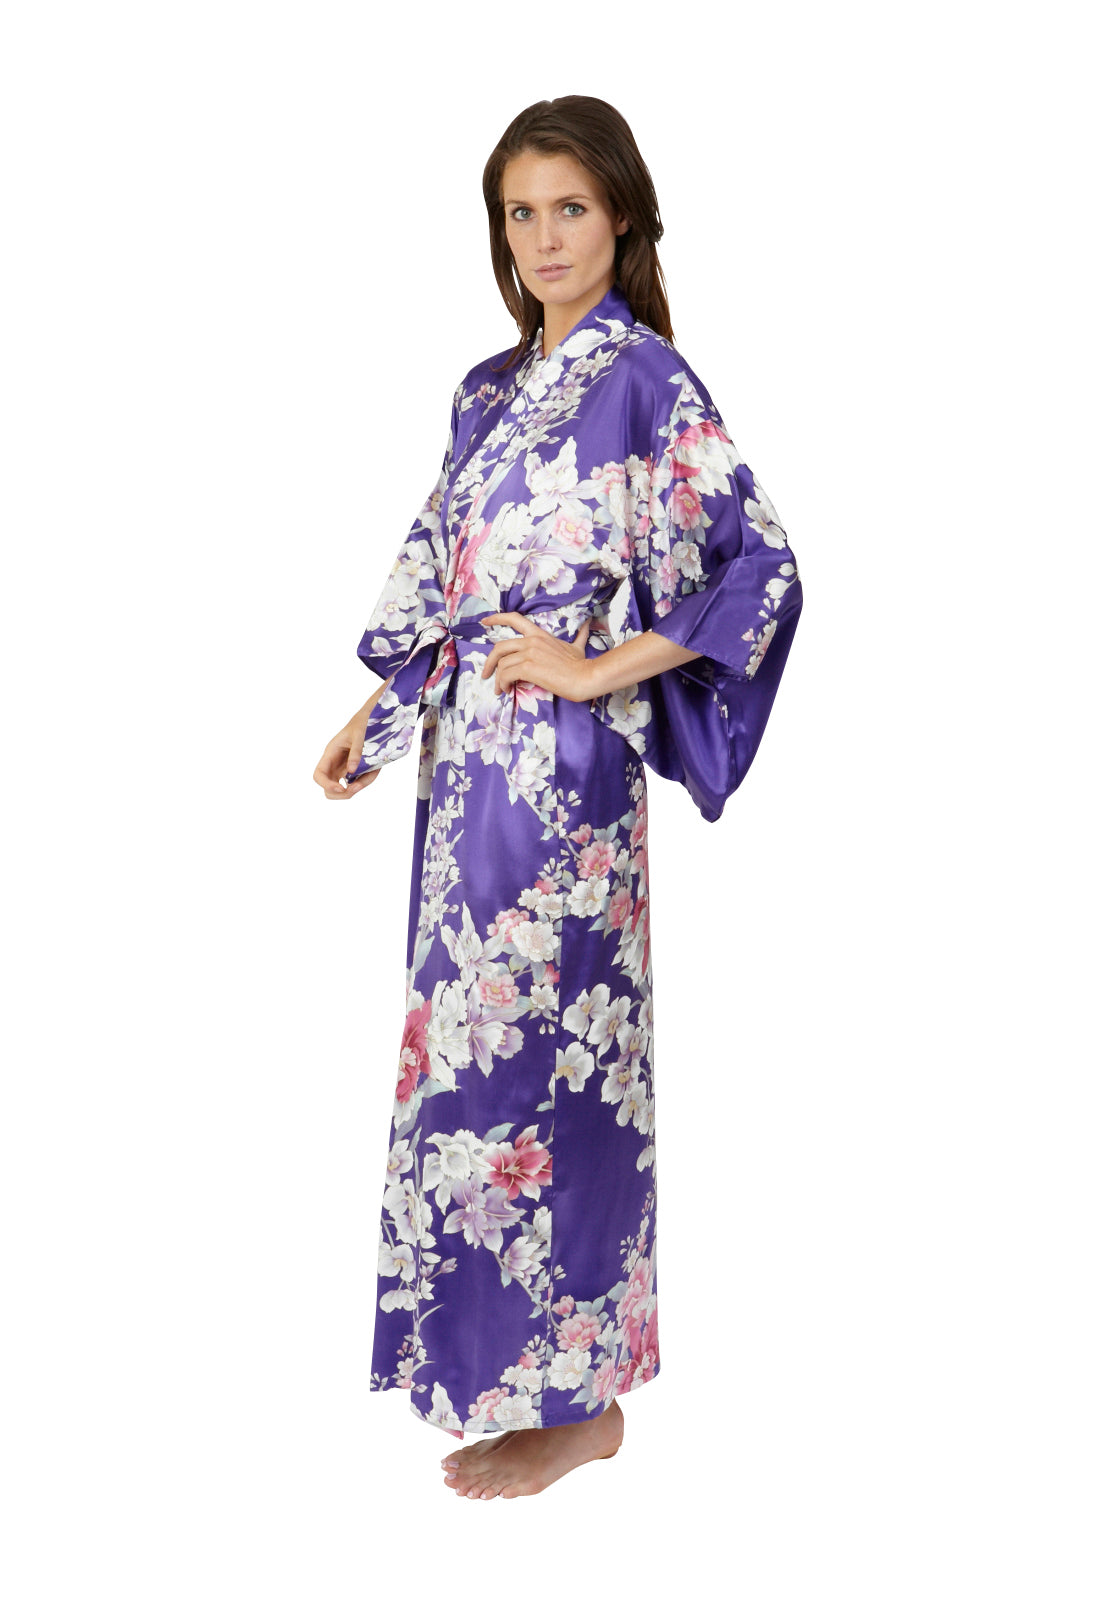 Turquoise kimono robe best kimono robe - Beautiful Robes